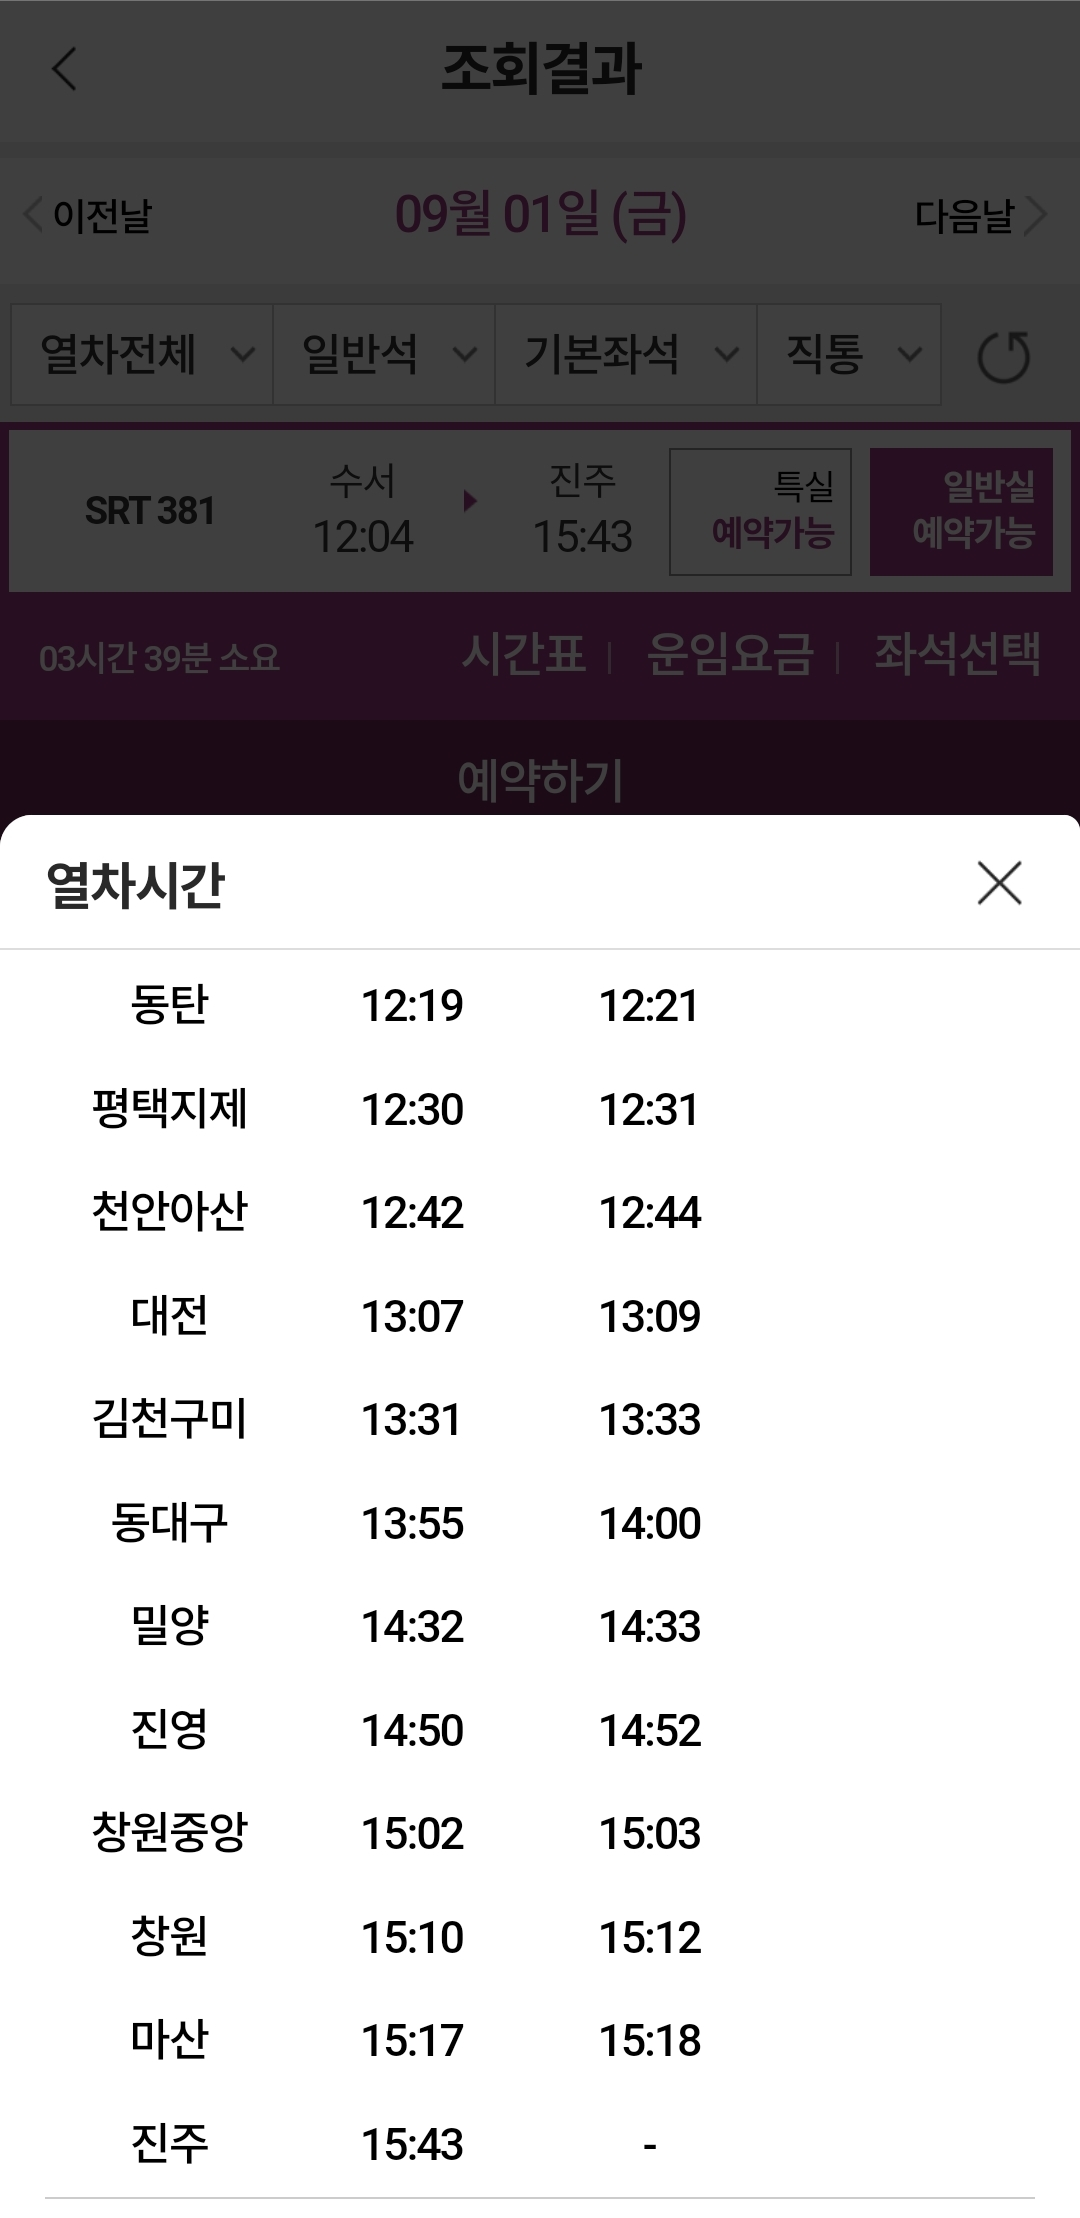 SRT 수서발 창원행 정차역(12시 4분 기차)